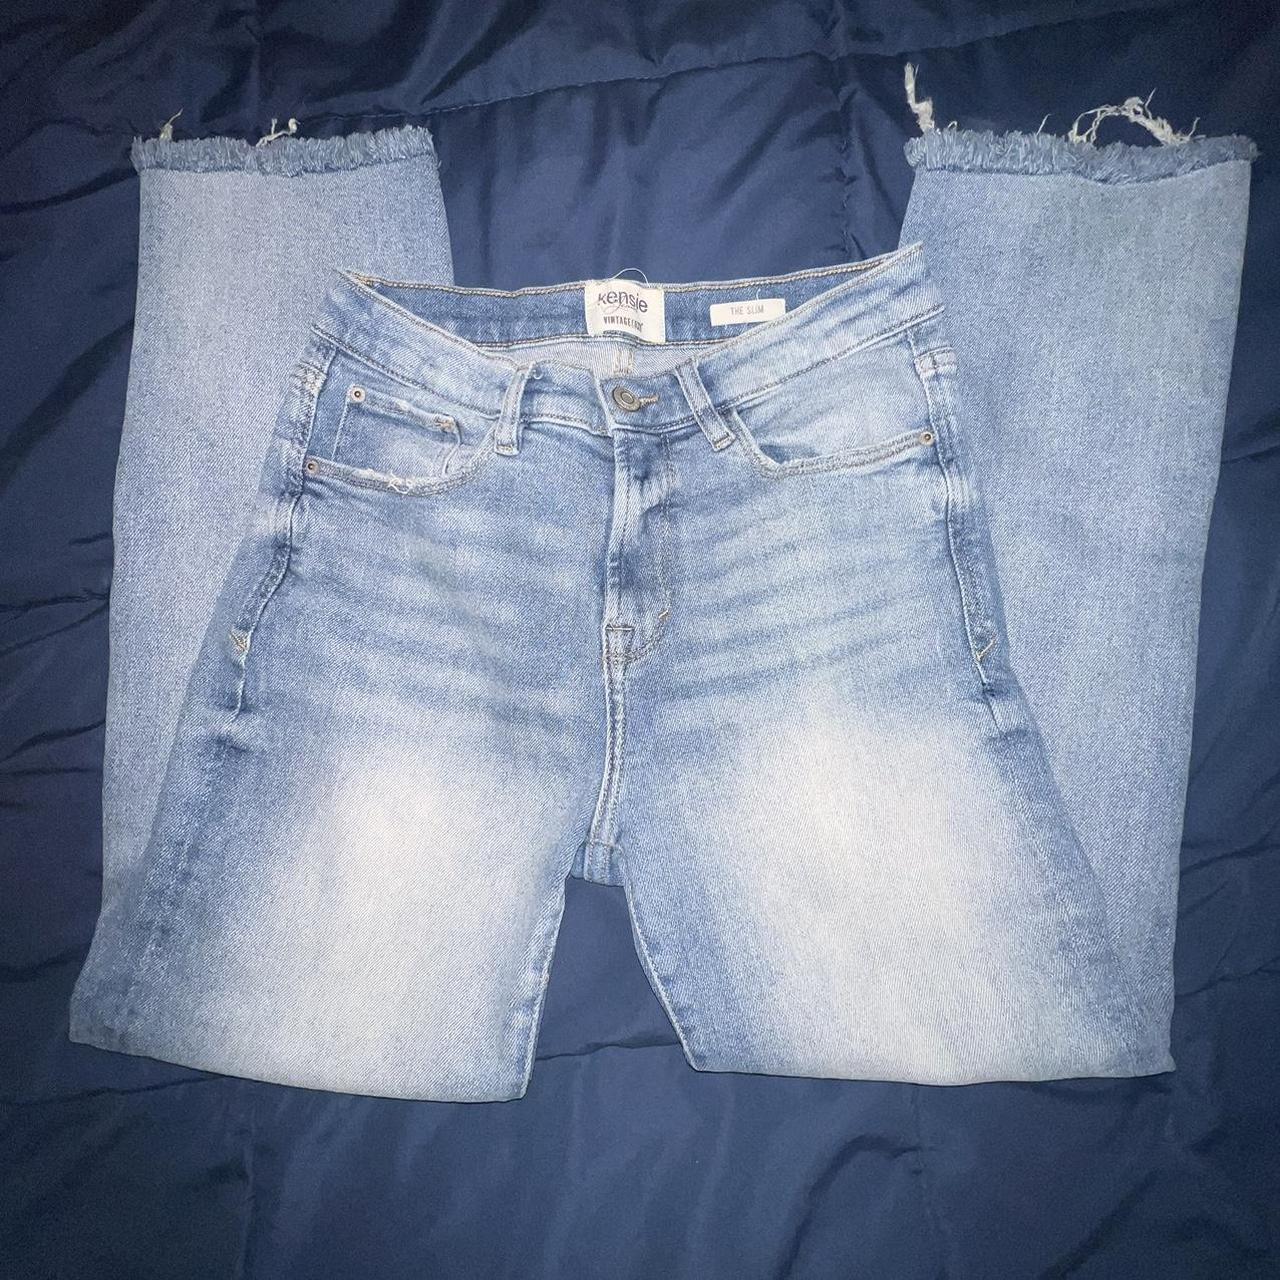 kensie vintage slim jeans size: 6/28 barely worn... - Depop